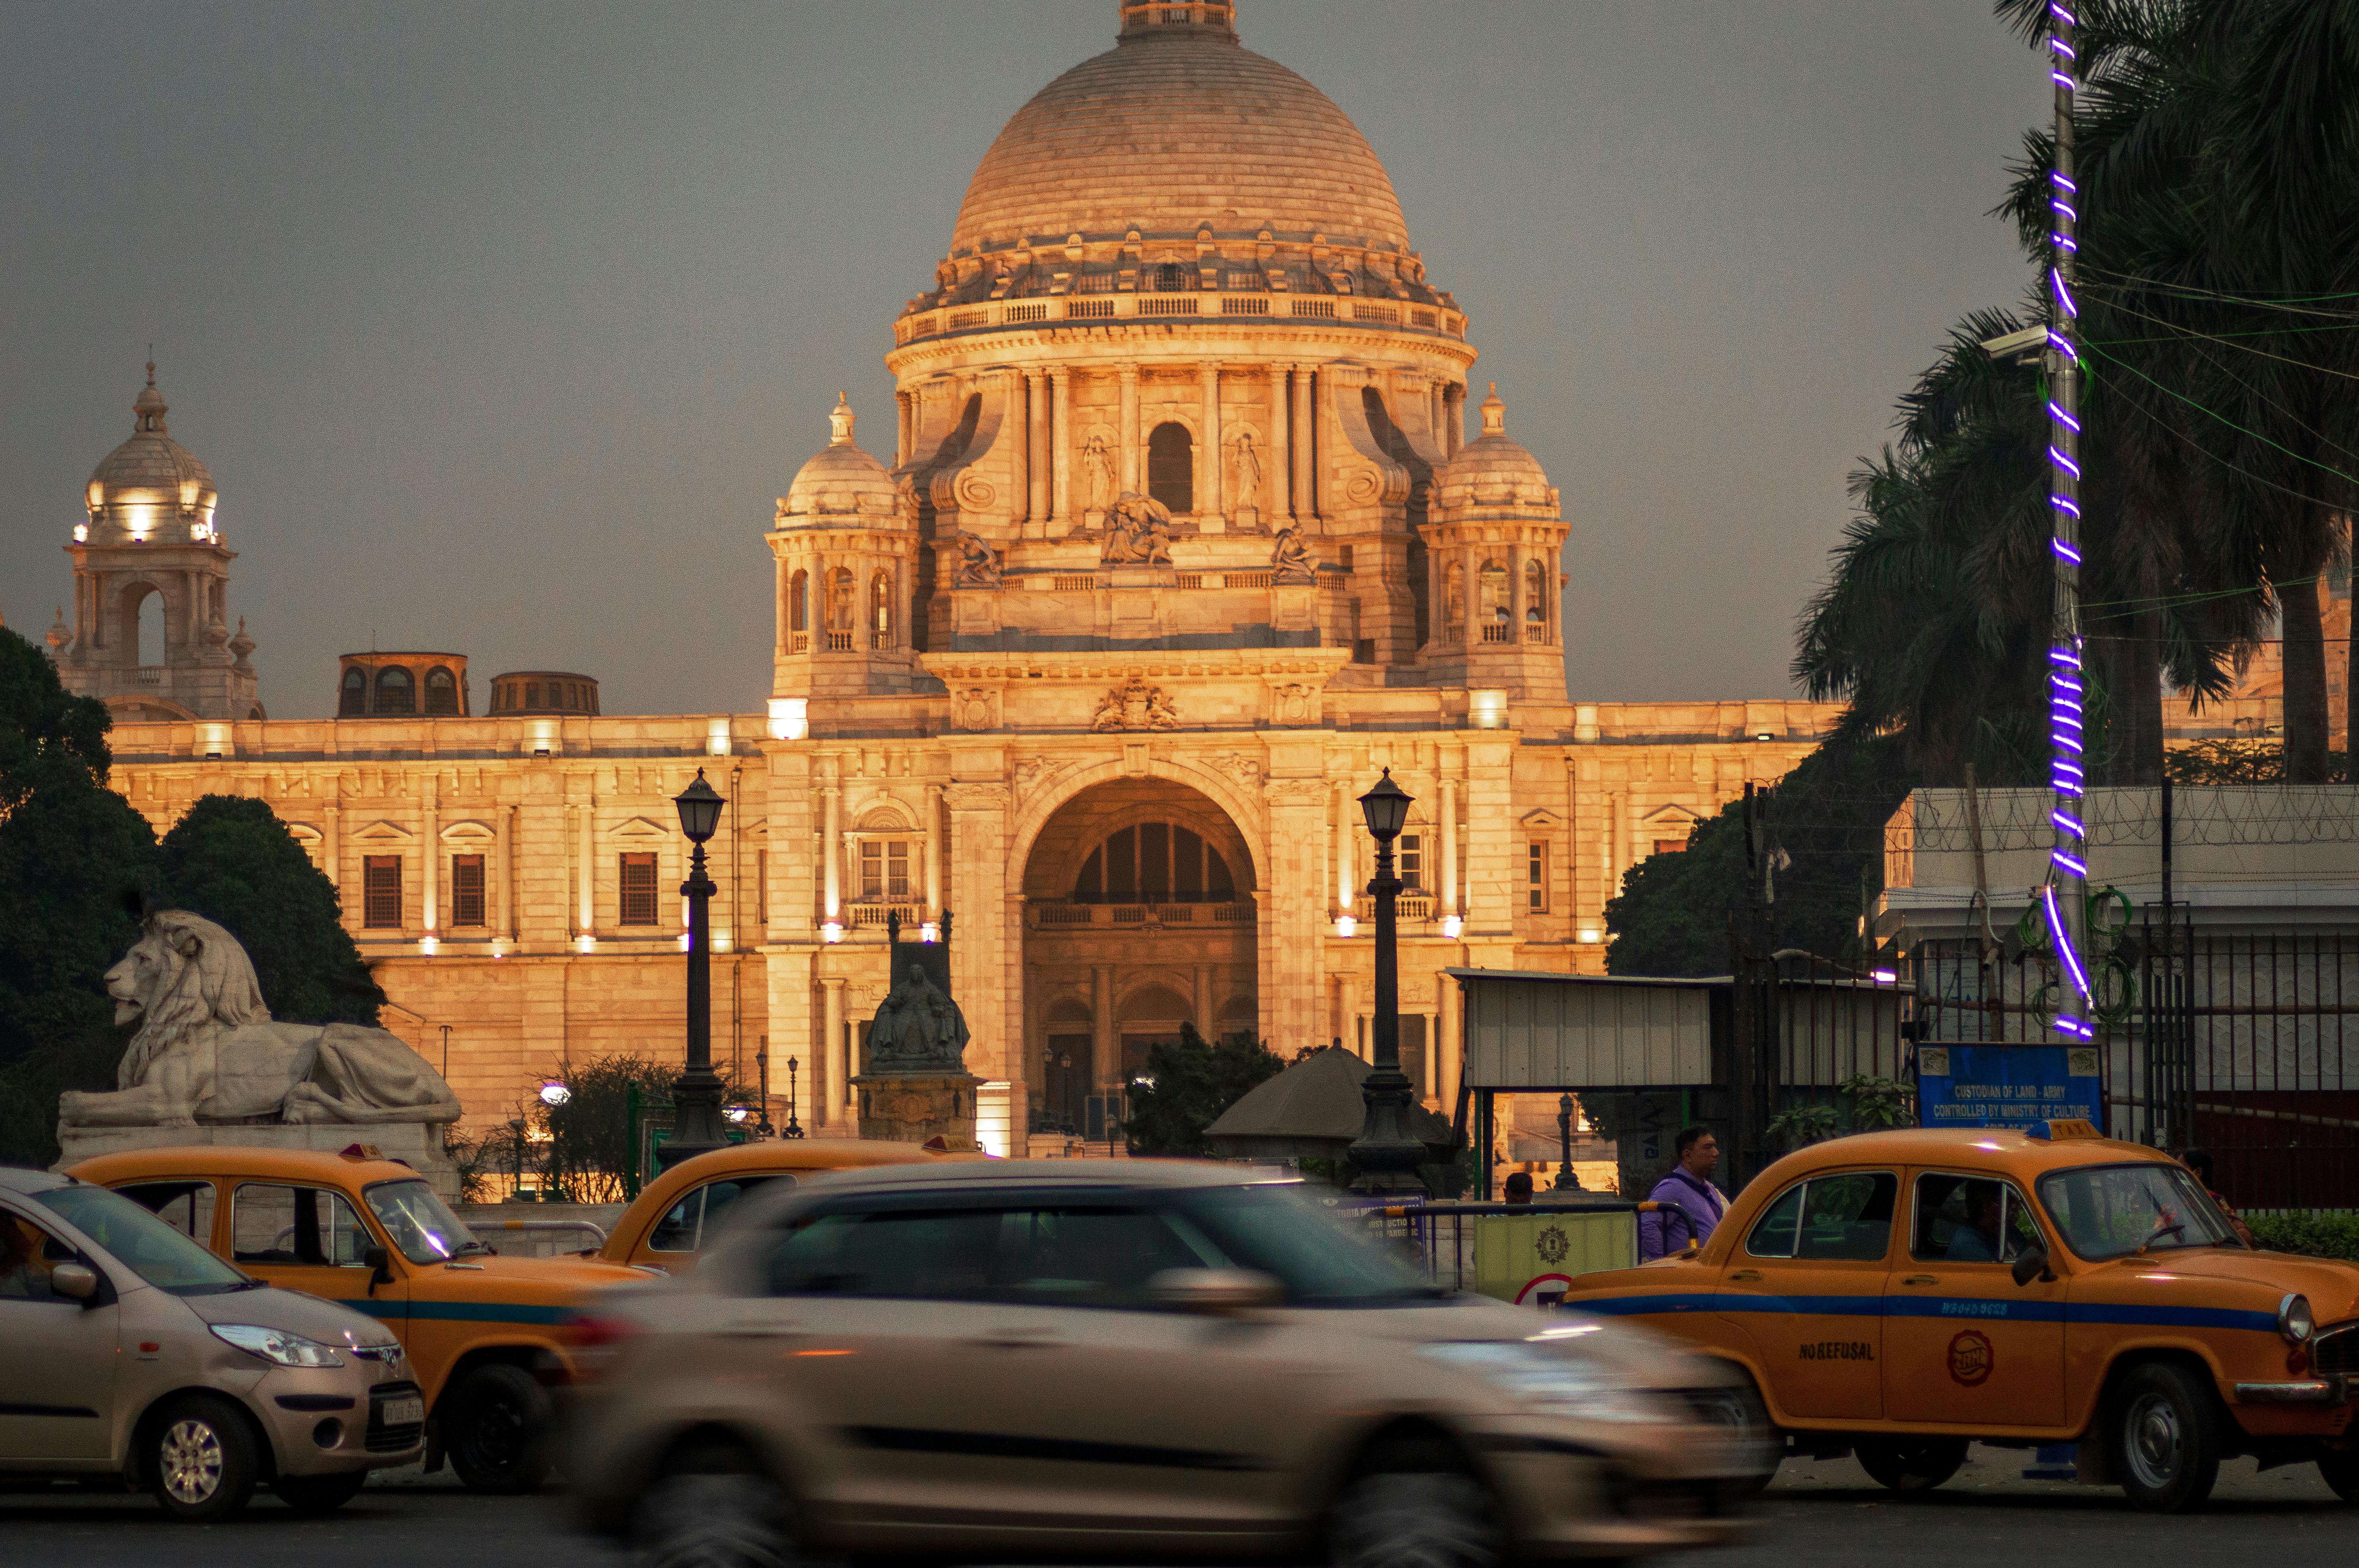 Kolkata Photos, Download The BEST Free Kolkata Stock Photos & HD Images